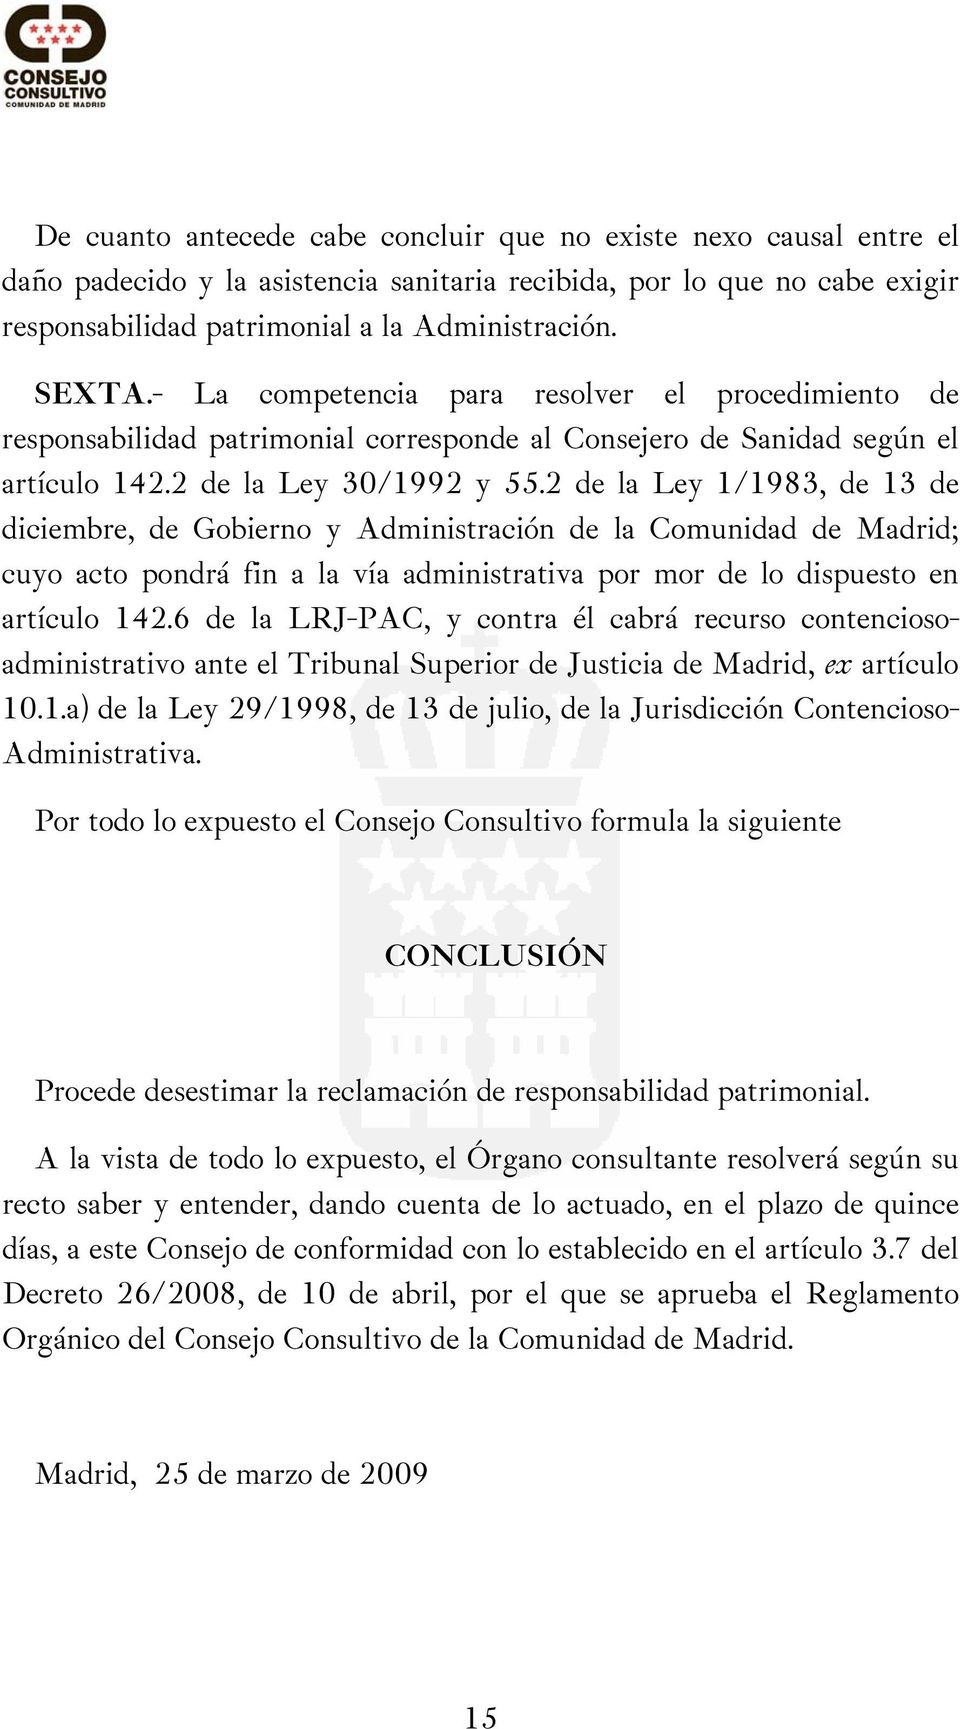 2 de la Ley 1/1983, de 13 de diciembre, de Gobierno y Administración de la Comunidad de Madrid; cuyo acto pondrá fin a la vía administrativa por mor de lo dispuesto en artículo 142.